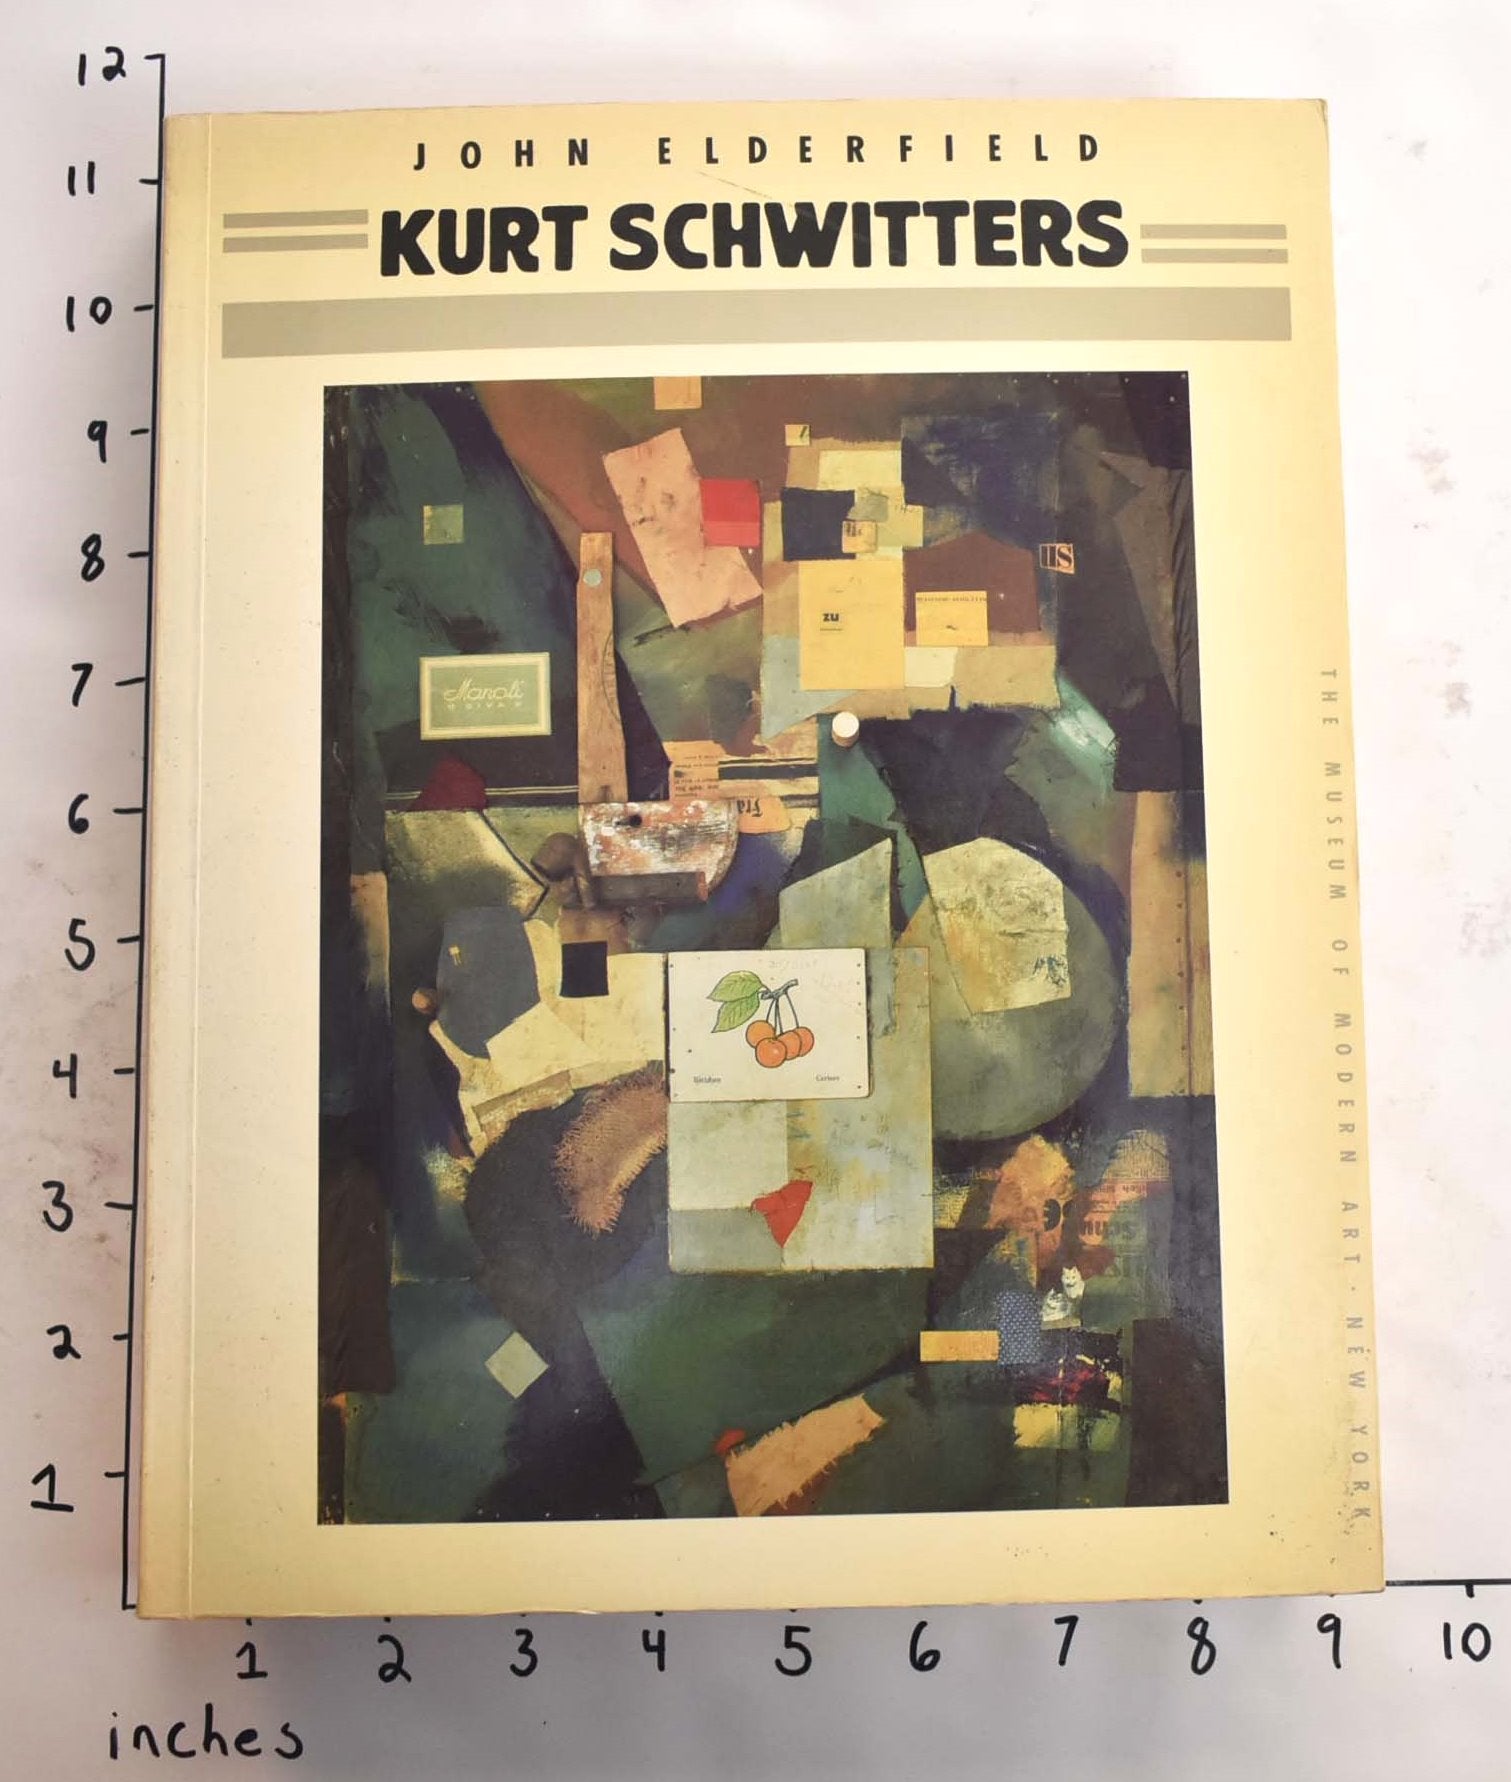 Kurt Schwitters by John Elderfield on Mullen Books